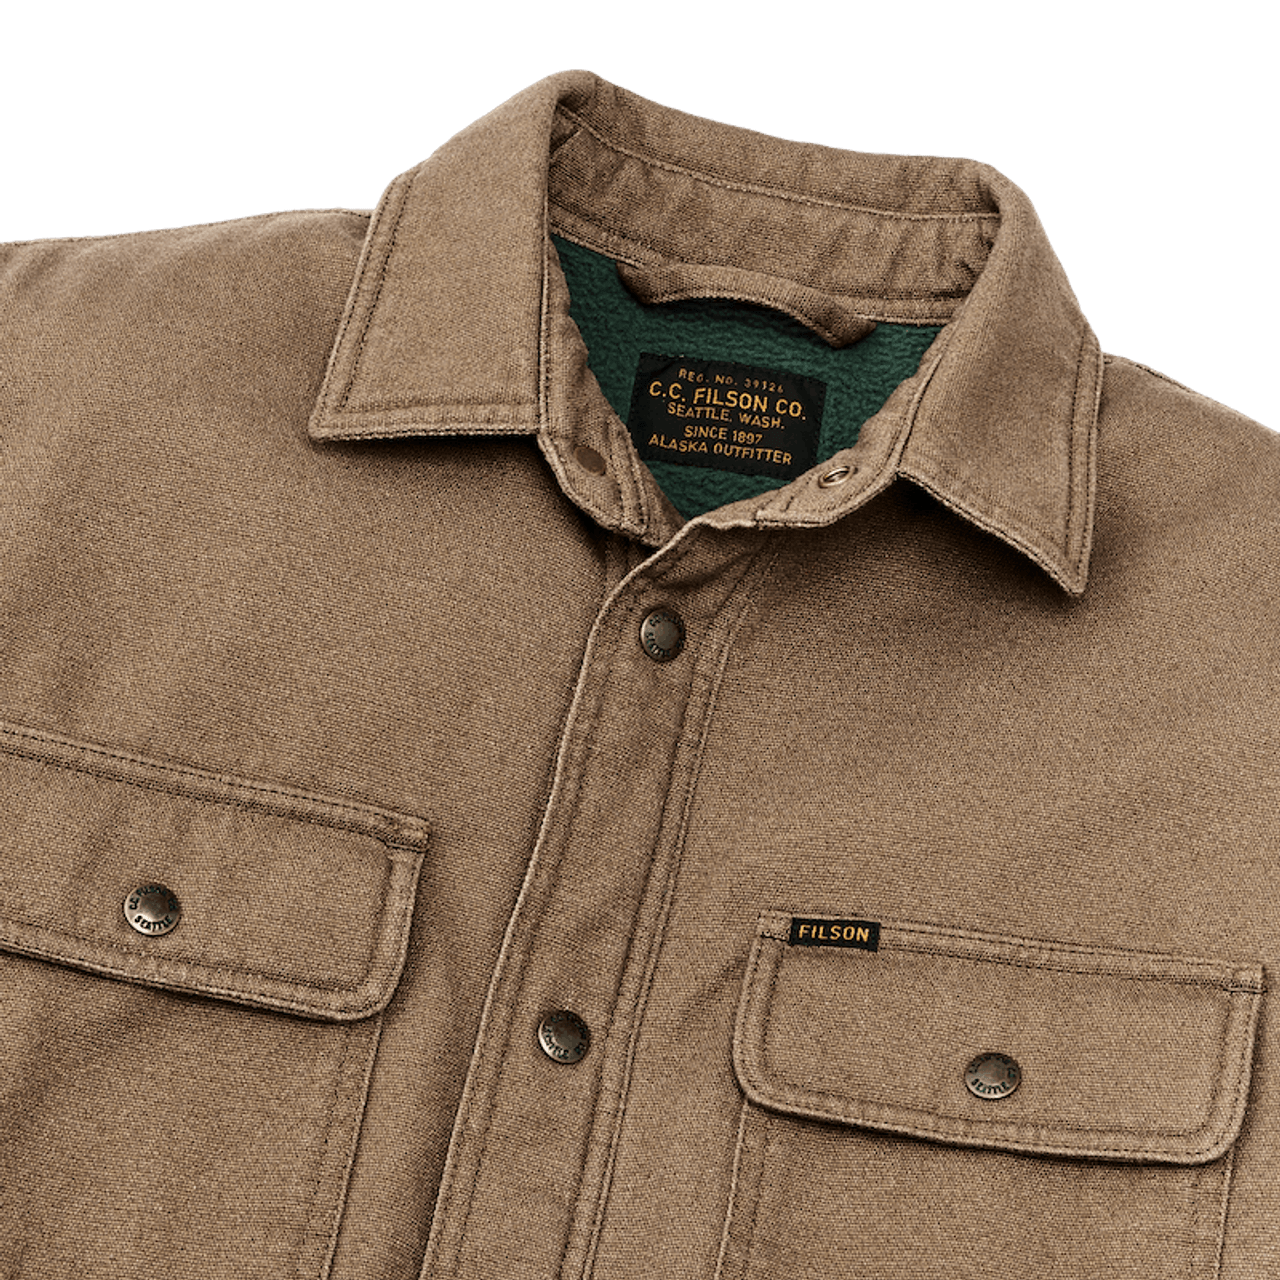 Filson Men's Fleece-Lined Jac-Shirt